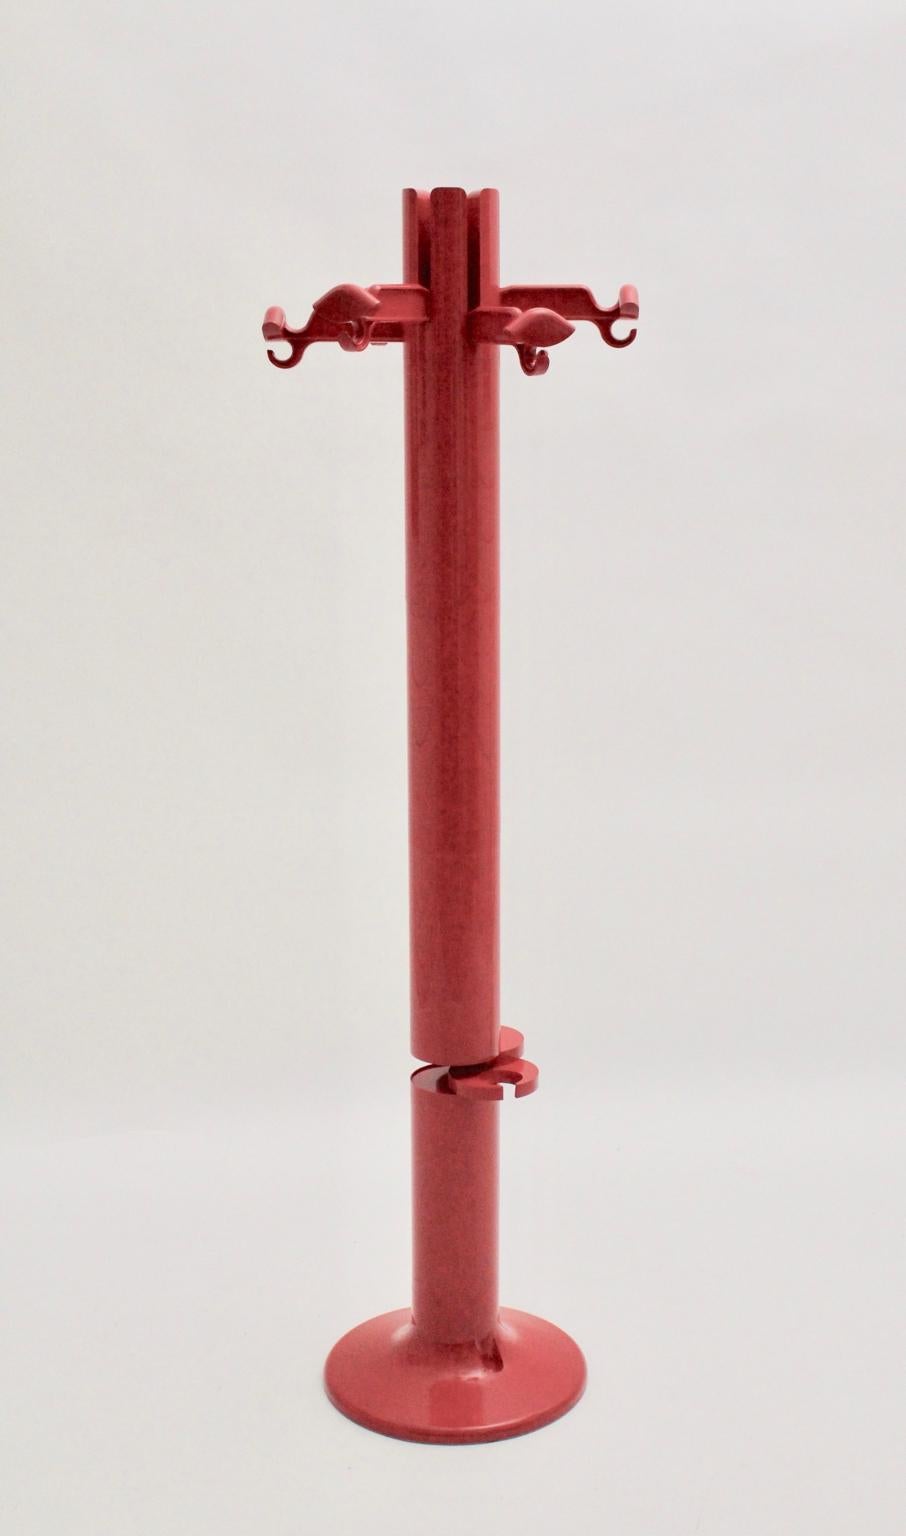 Der rote Vintage-Garderobenständer aus Kunststoff im Weltraumzeitalter wurde von Giancarlo Piretti, Italien 1972, entworfen und von Anonima Castelli hergestellt.
Außerdem ist er unten gestempelt.
Außerdem zeigt der Kleiderständer die sehr seltene